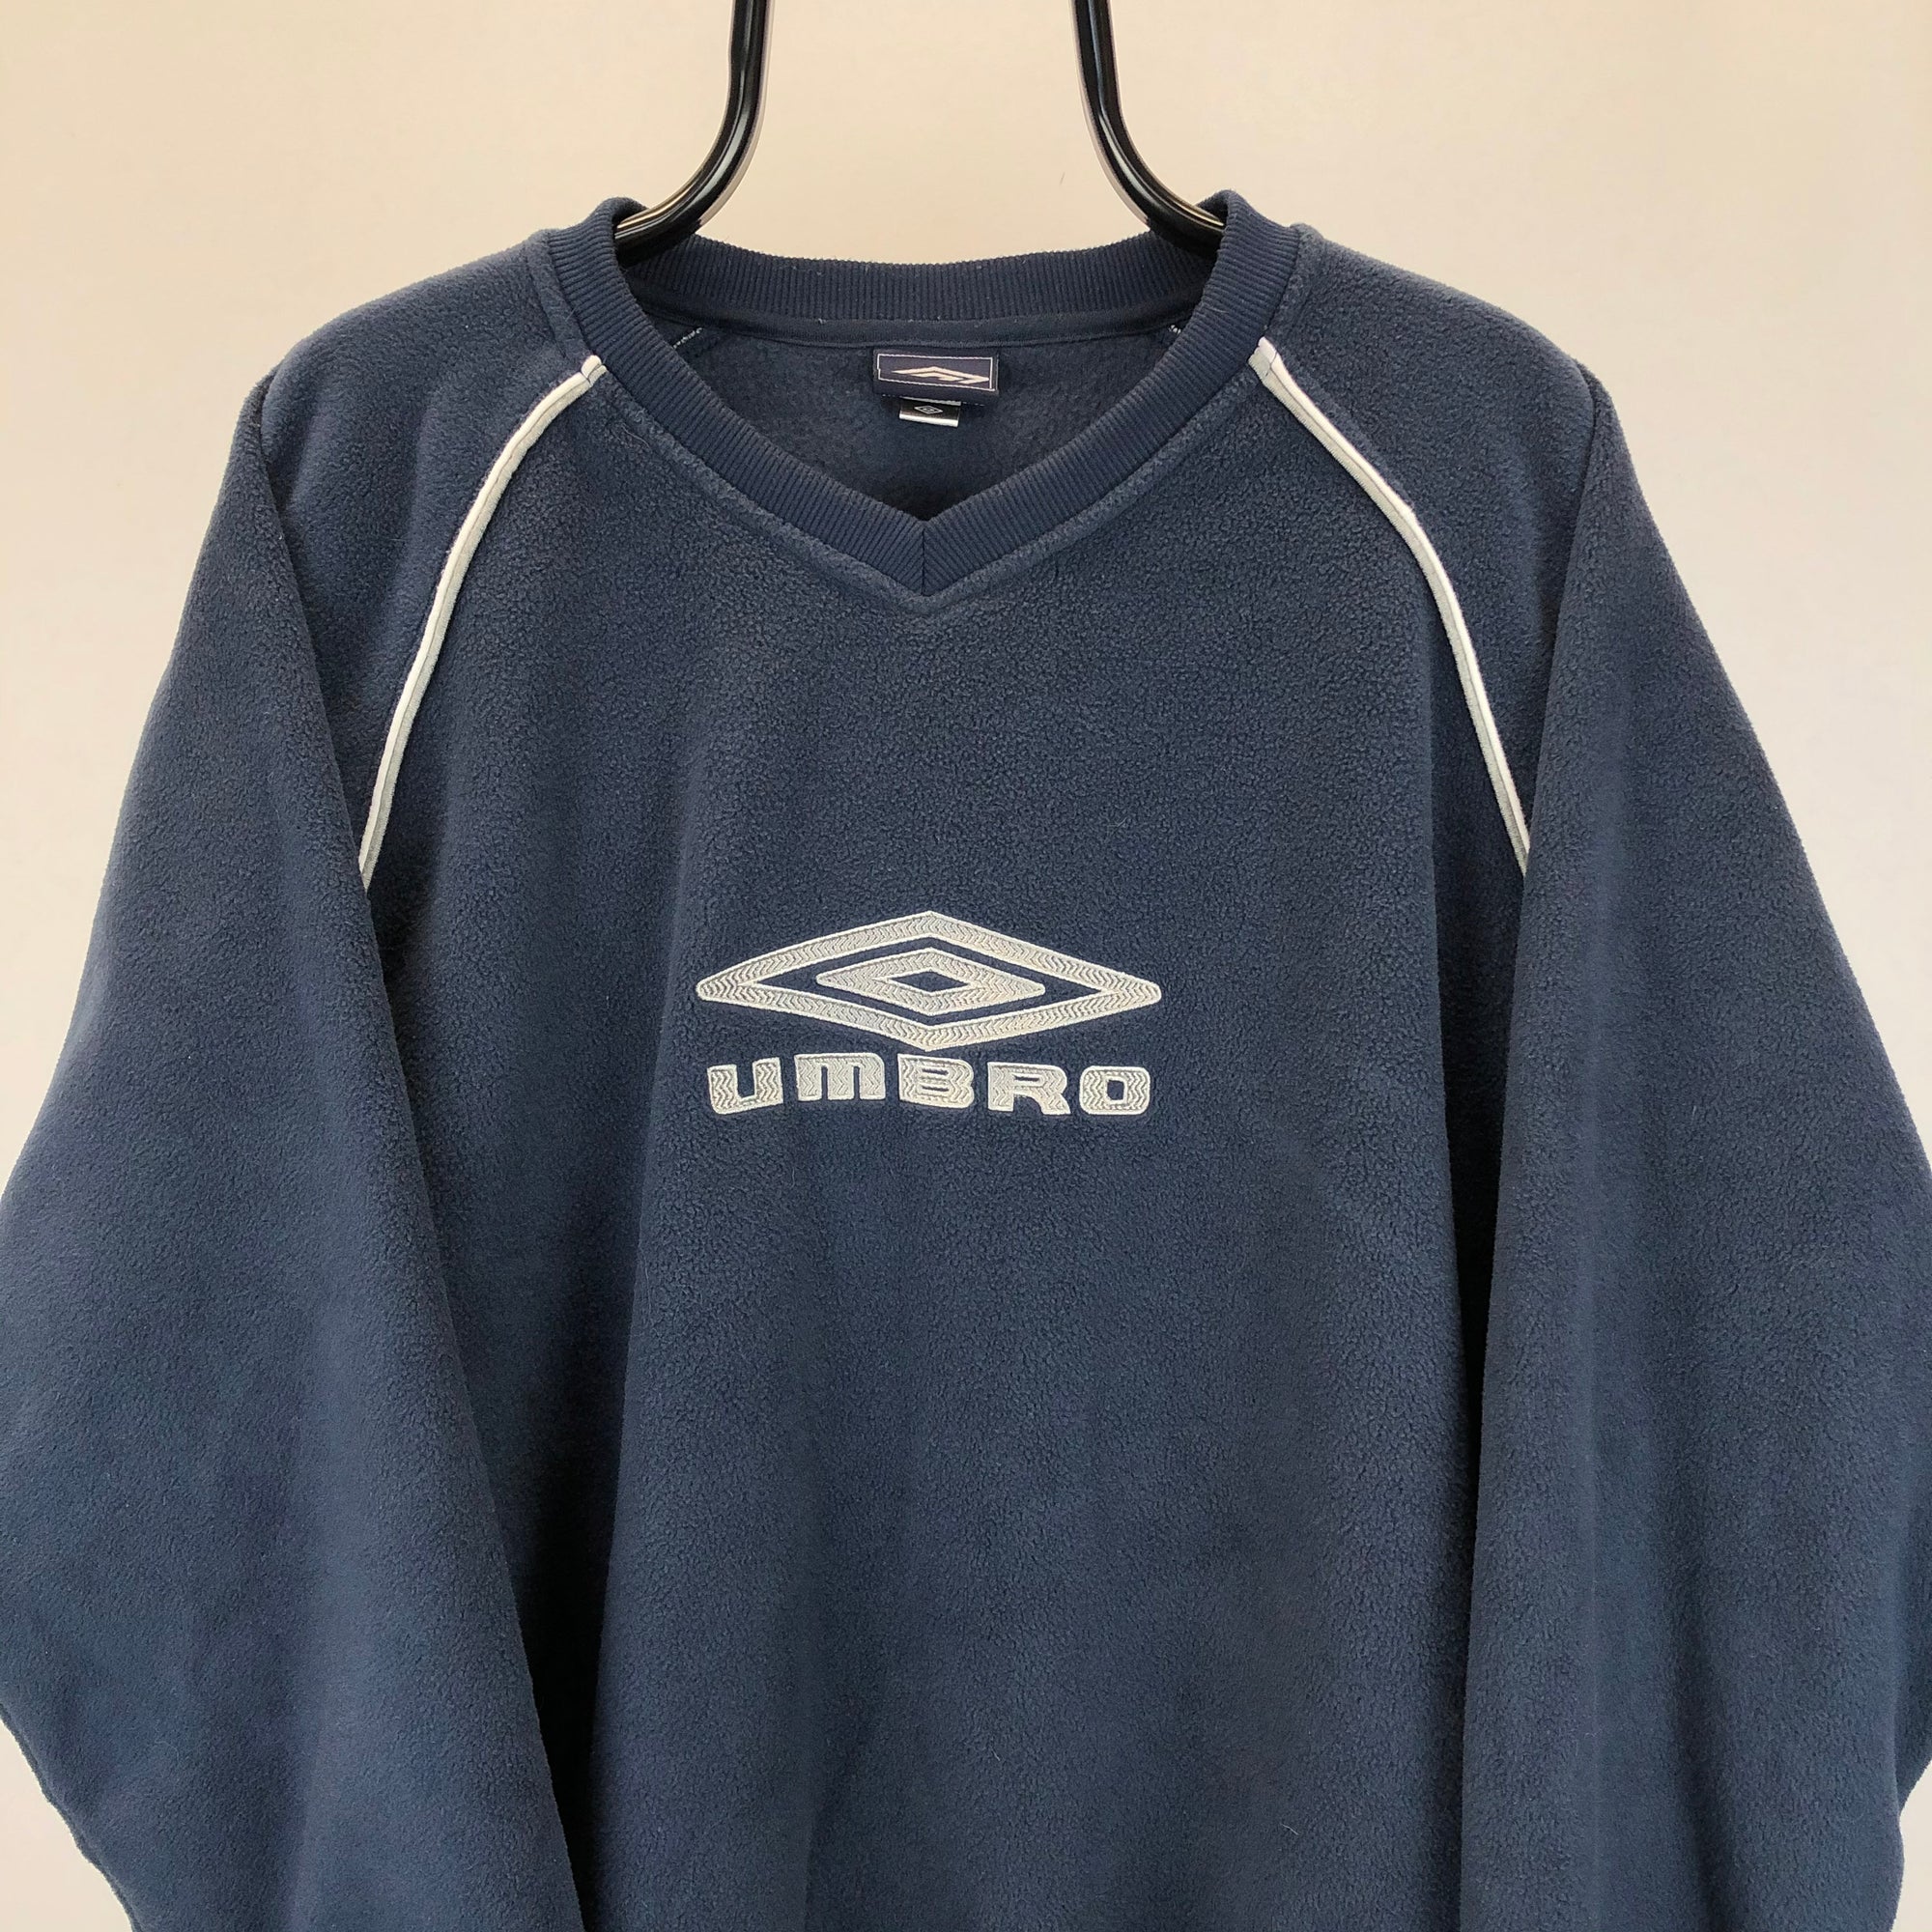 Vintage Umbro Spellout Fleece Sweatshirt in Navy - Men's XL/Women's XXL